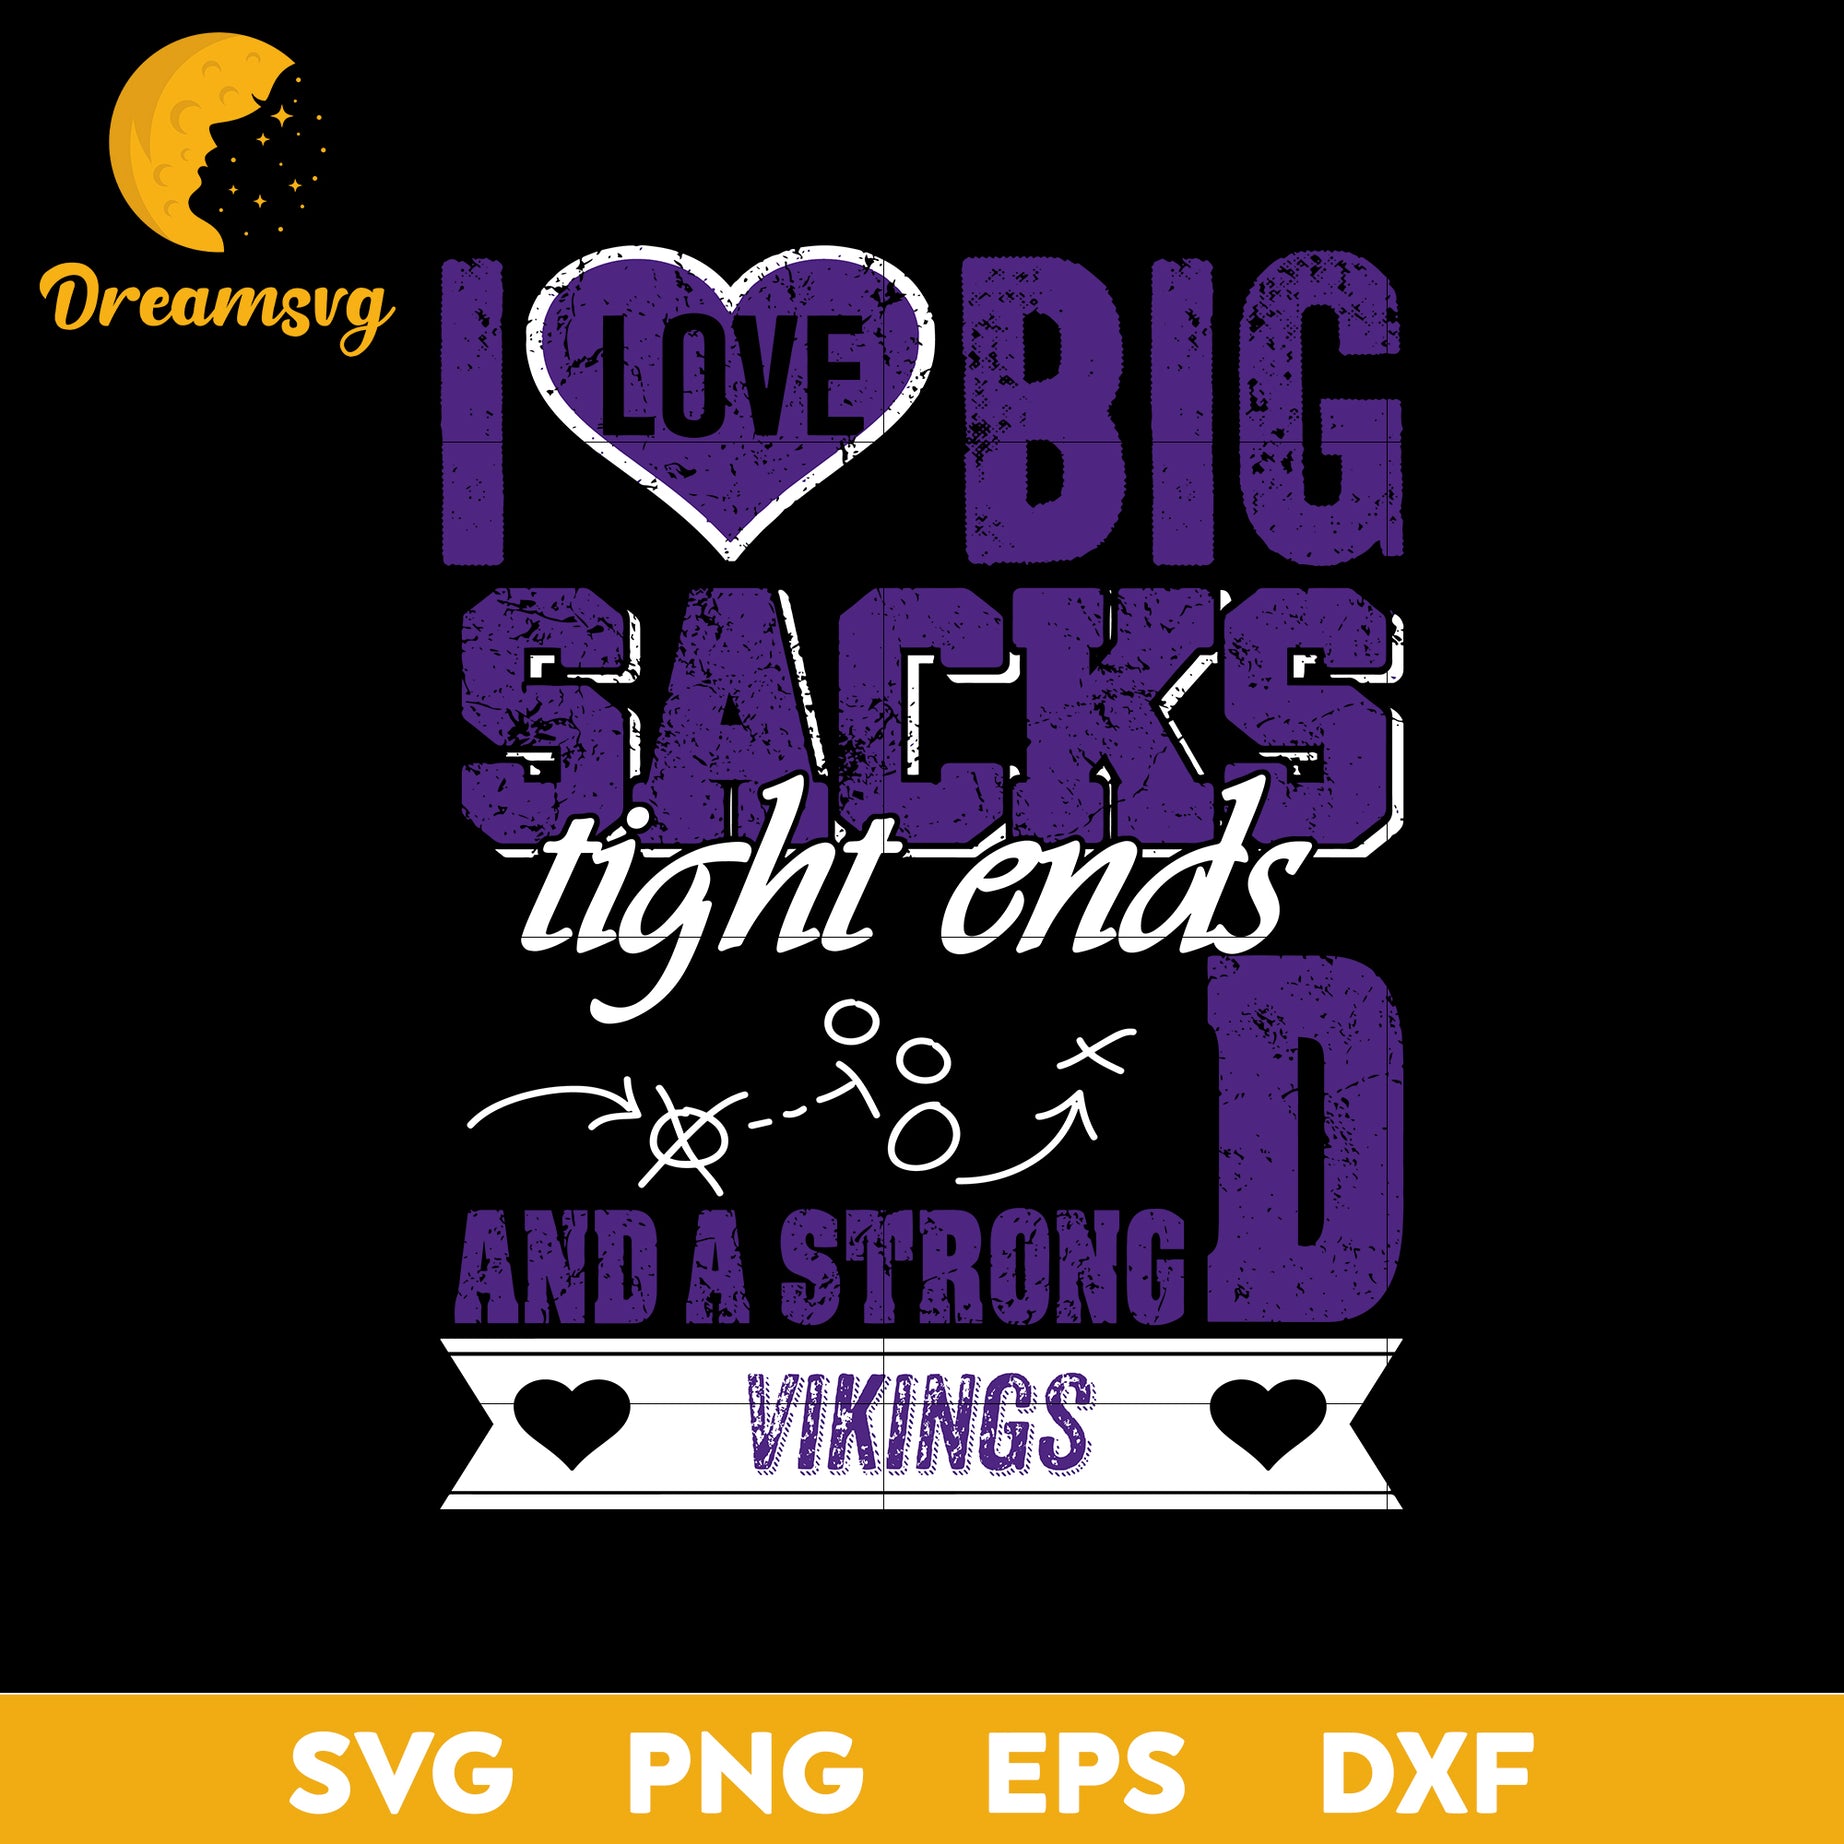 I Love Big Sacks tight ends and a strongD Minnesota Vikings Svg , Nfl Svg, Png, Dxf, Eps Digital File.